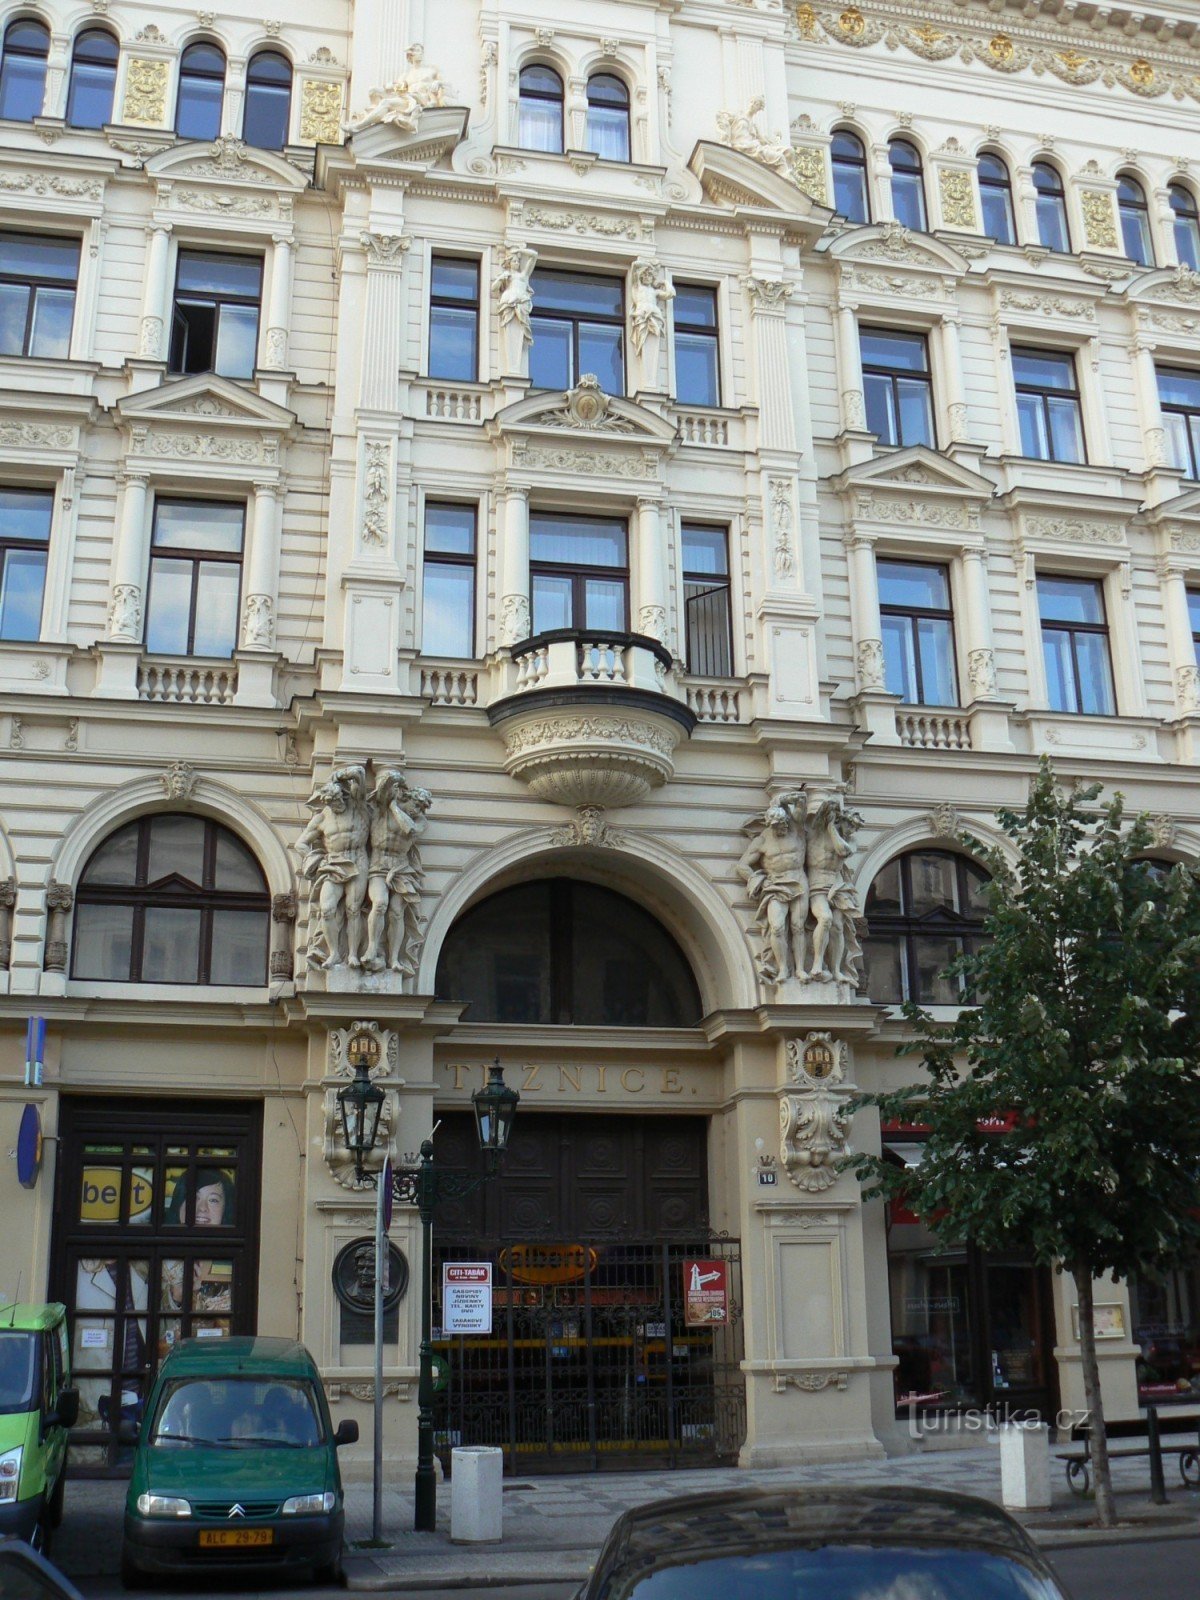 Ulica Rytířská - Starogradska tržnica